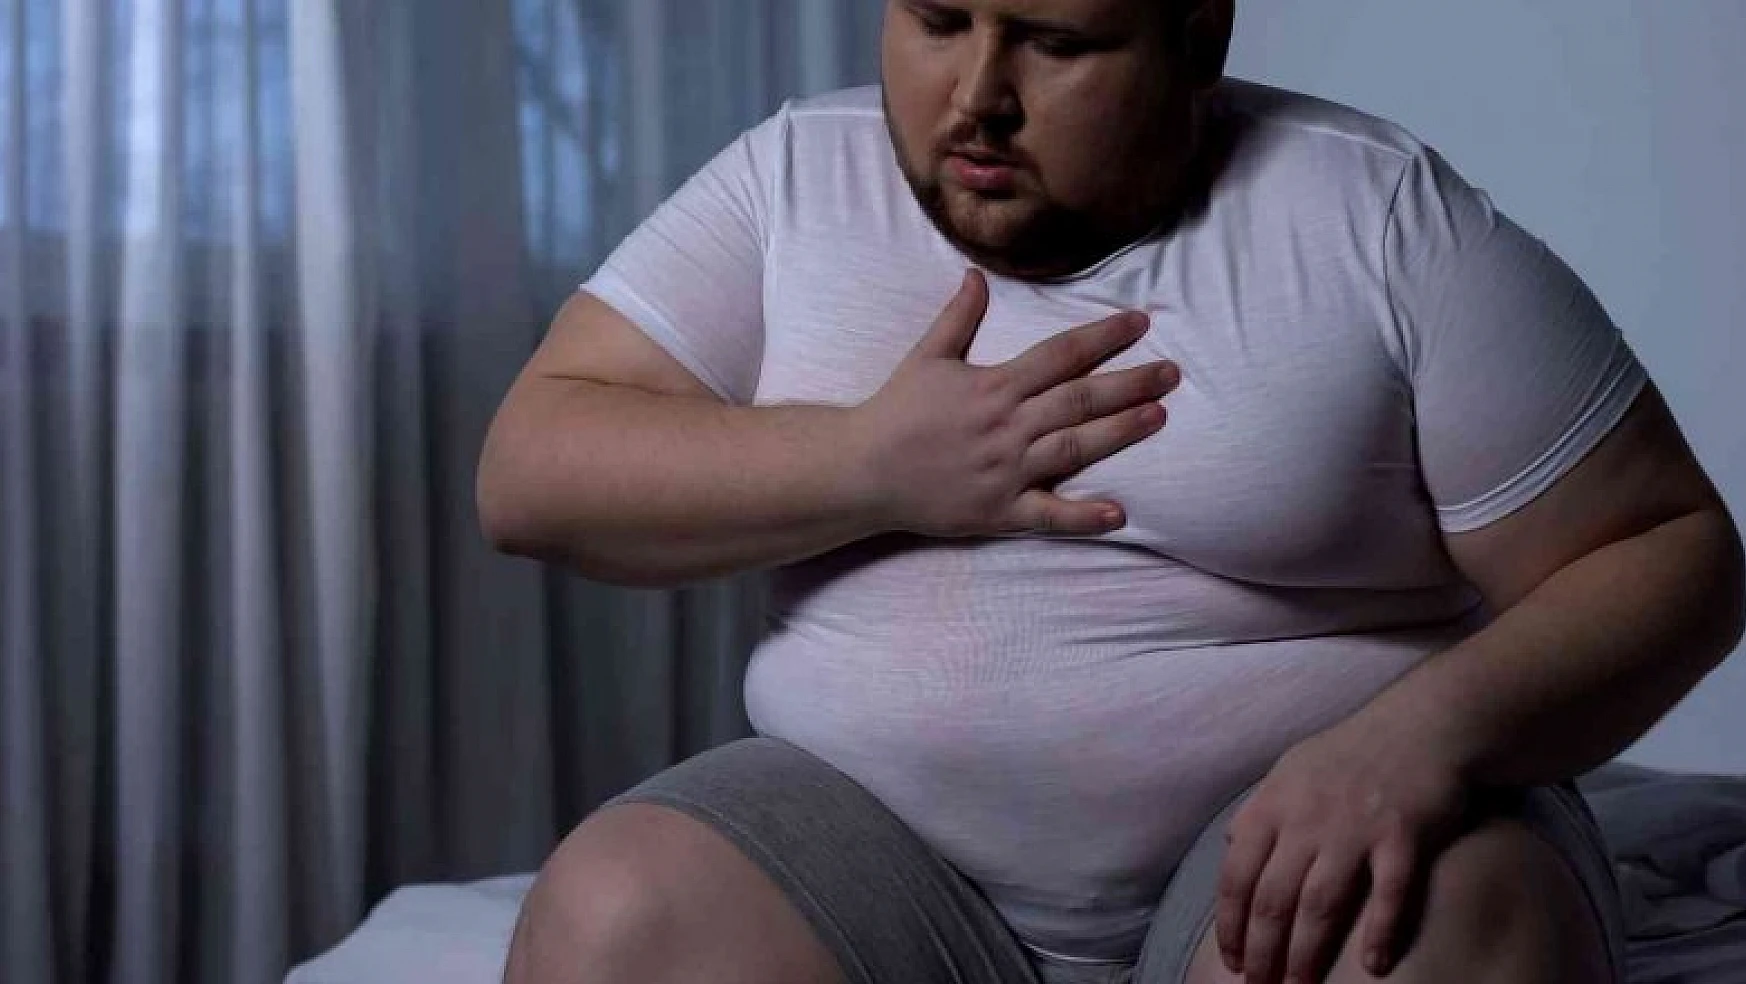 Astım hastalarının yüzde 40'ında obezite görülüyor